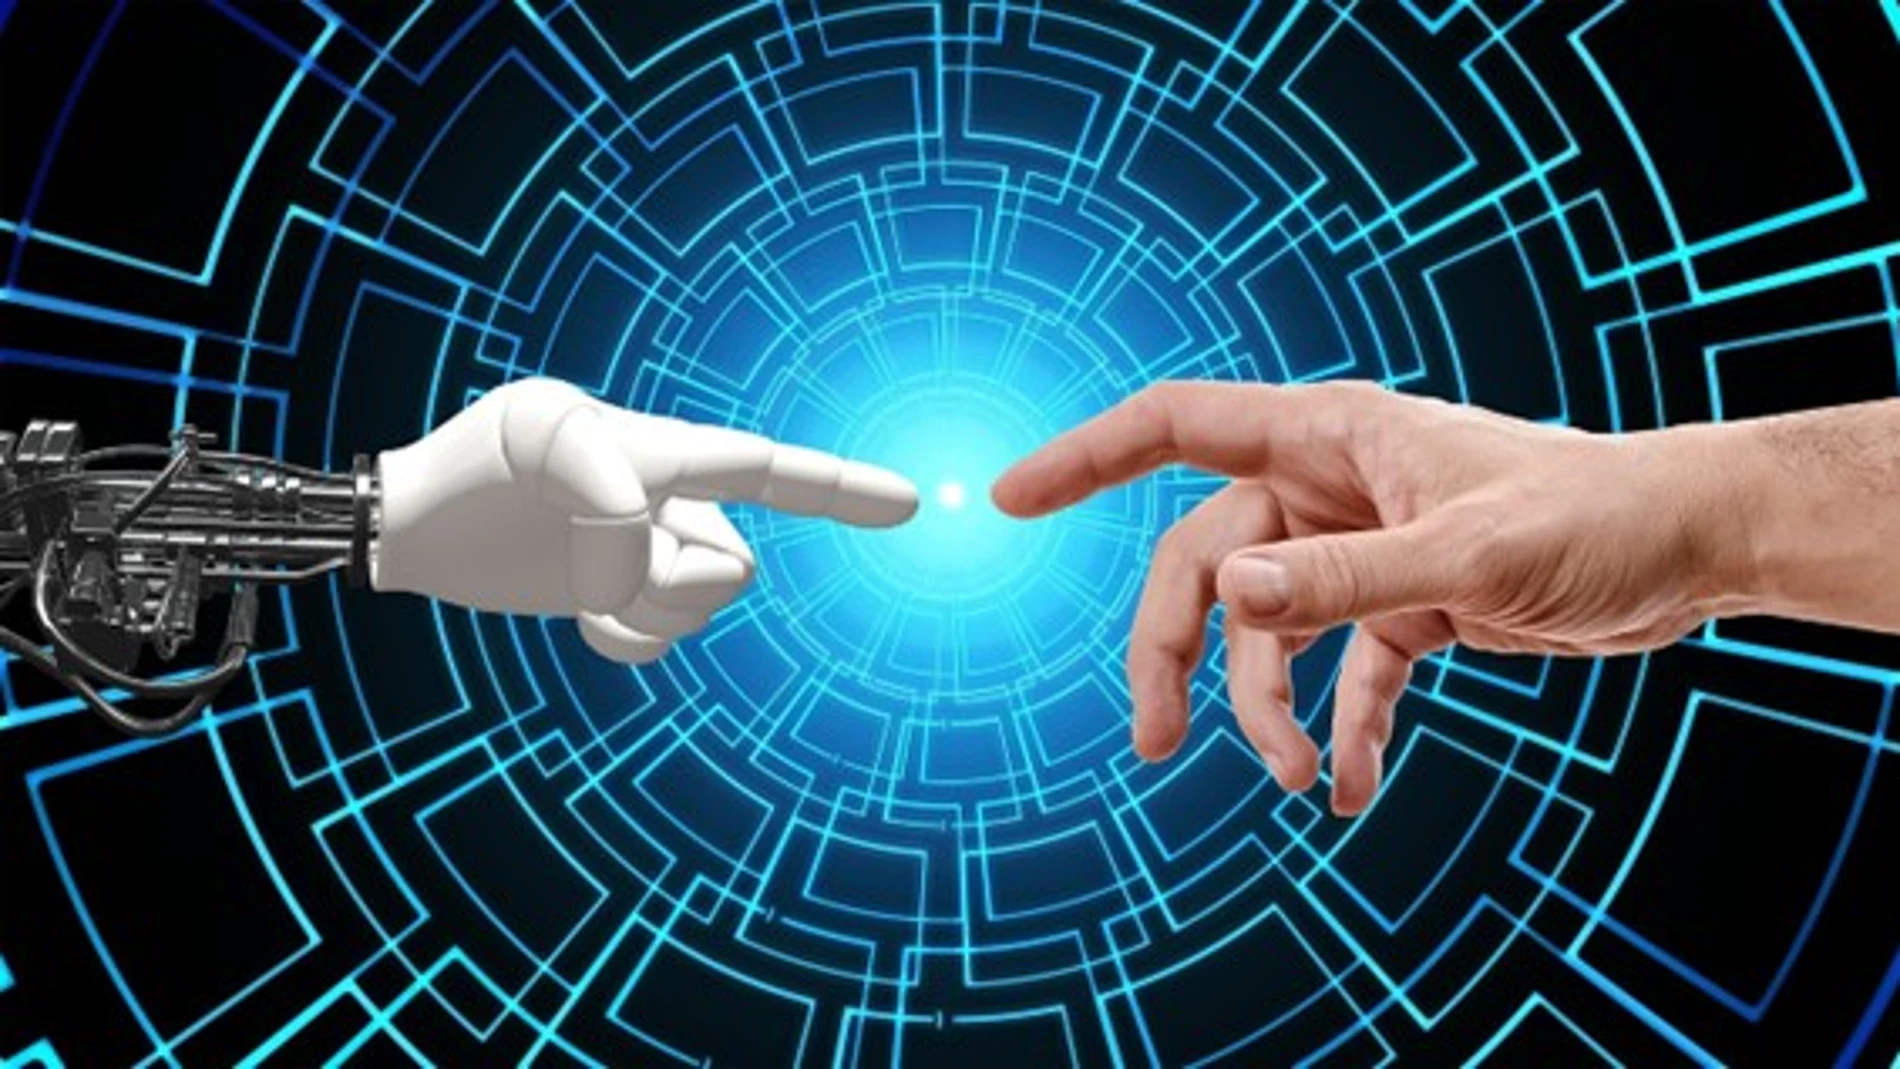 Representación artística de la inteligencia artificial mostrando un dedo humano tocando un dedo de robot 